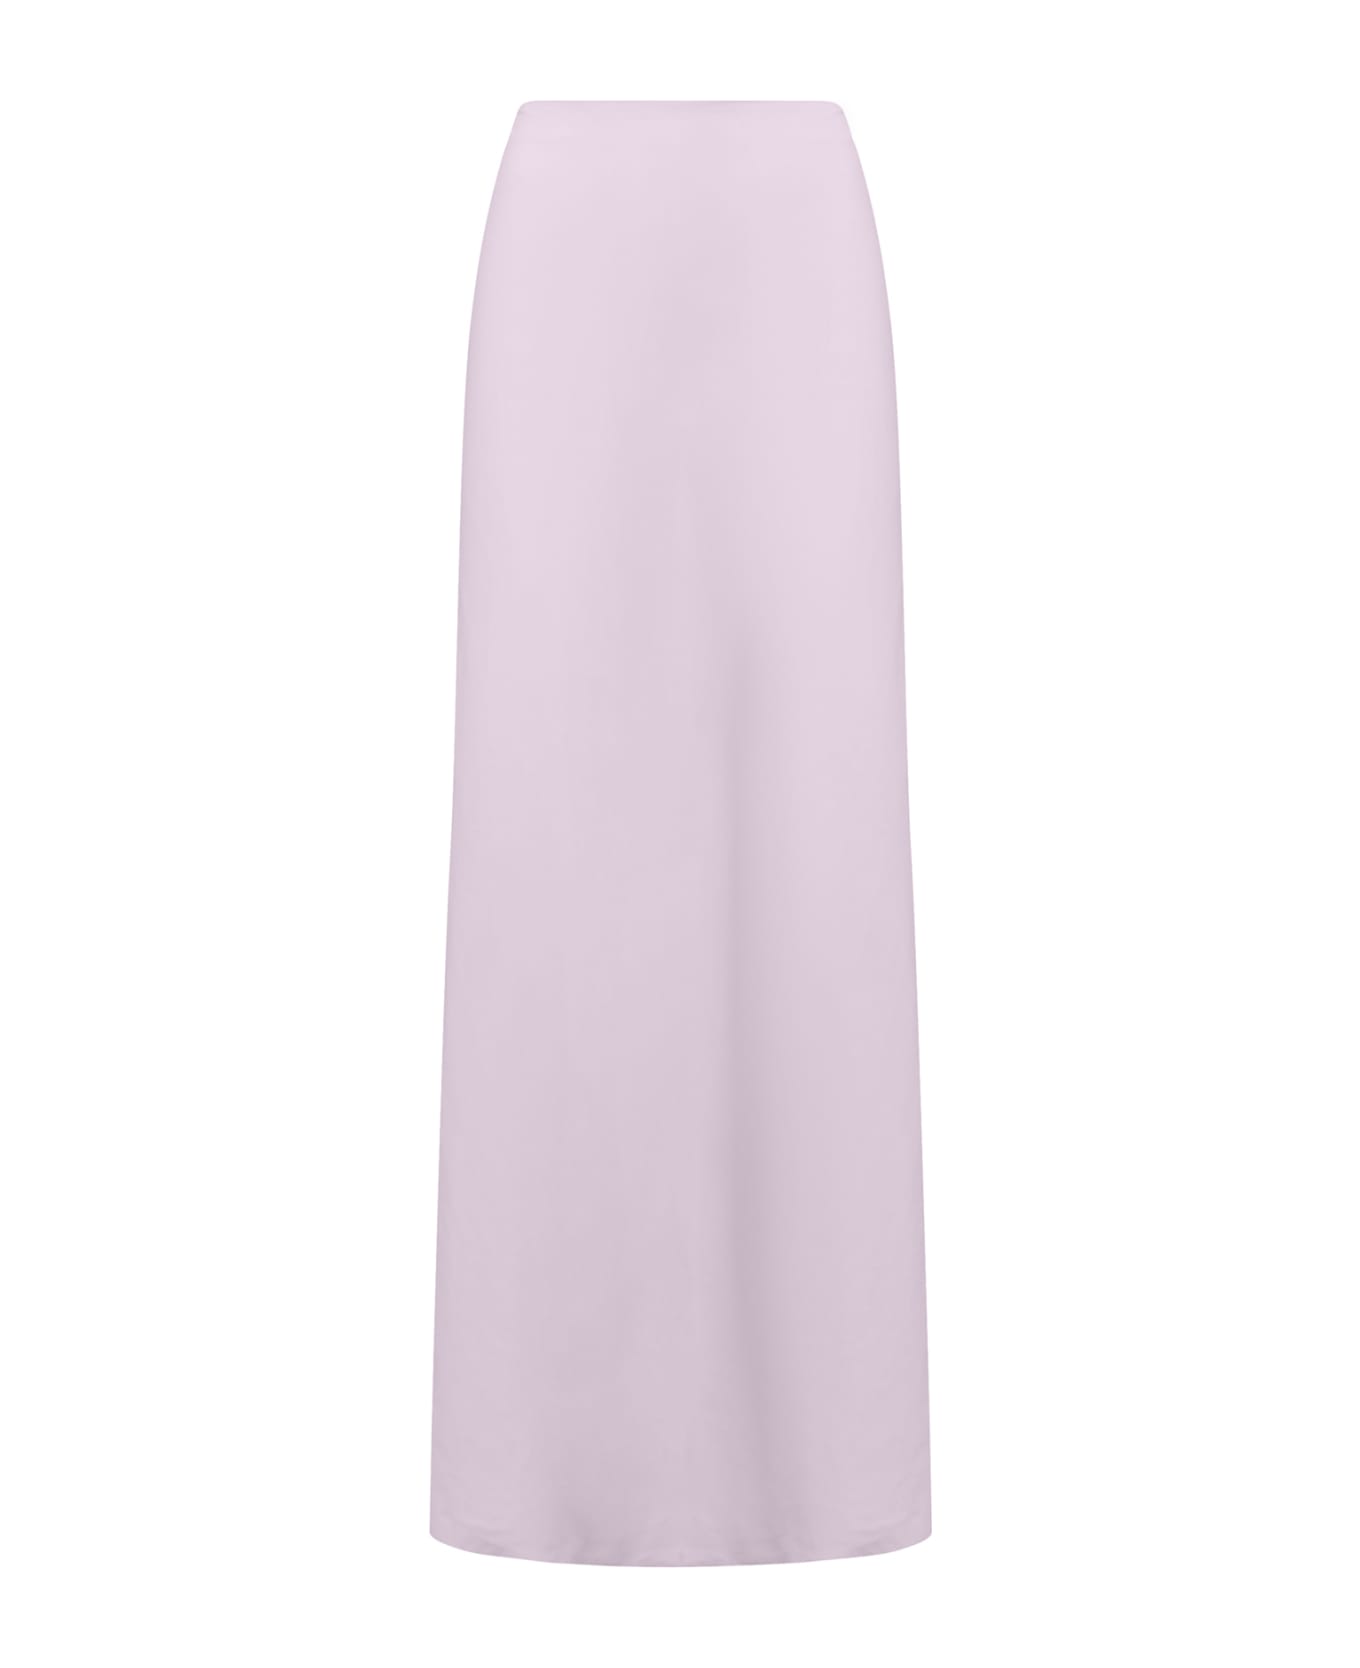 Sucrette Skirt - Rosa